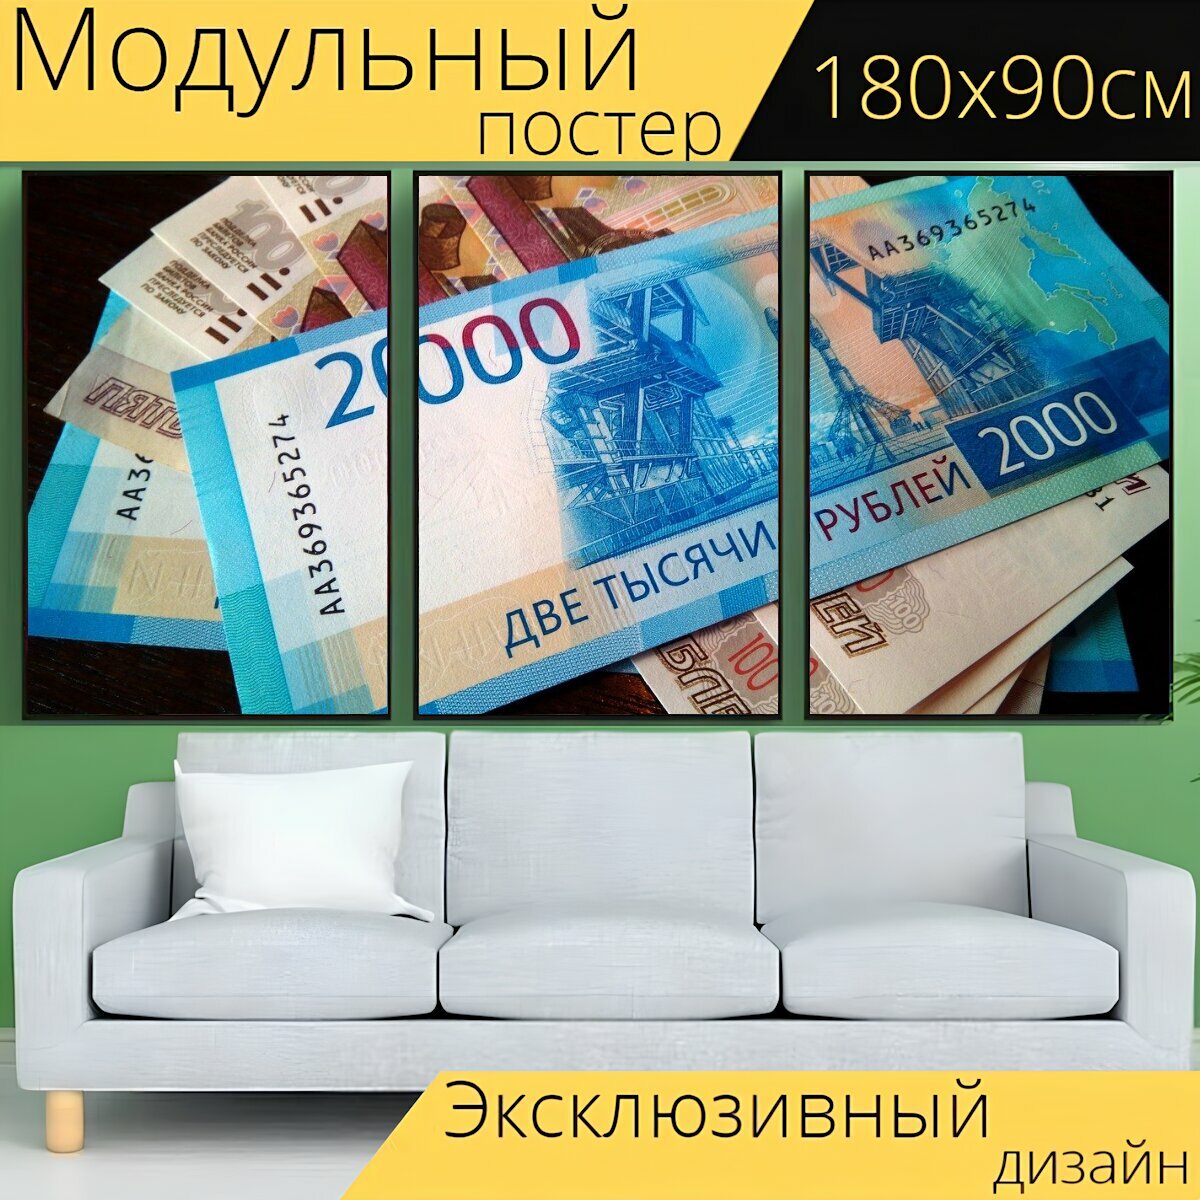 Модульный постер "Деньги, купюры, финансы" 180 x 90 см. для интерьера